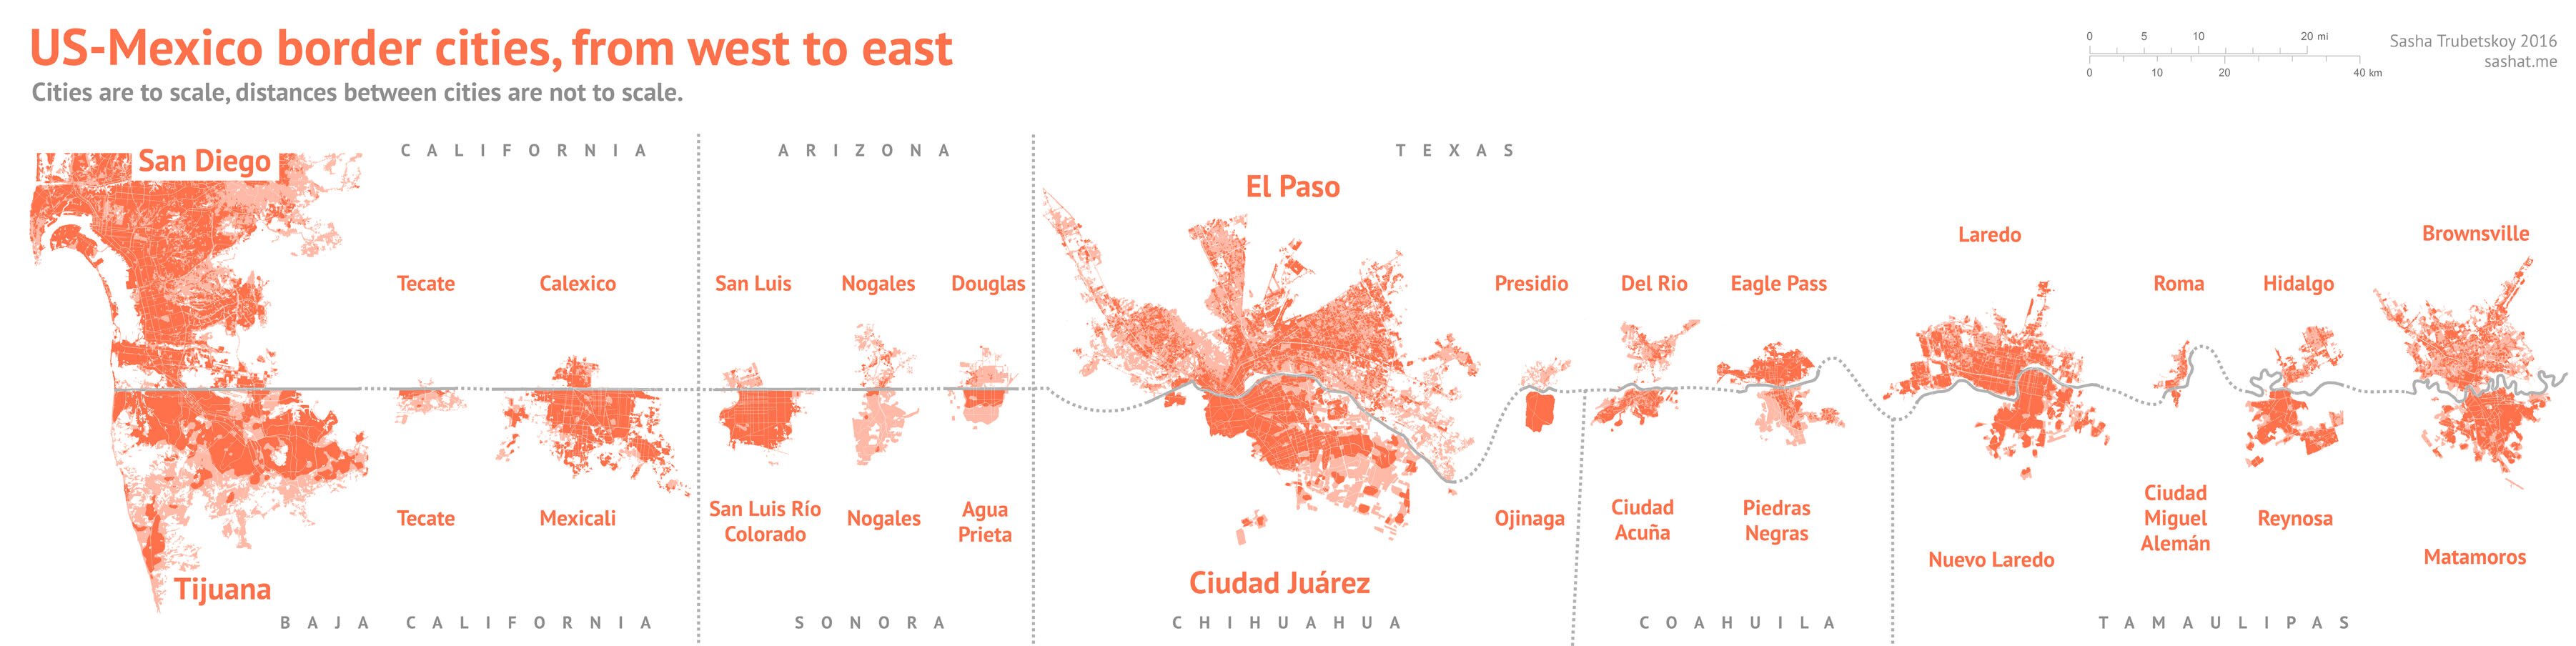 Ciudades fronterizas EUA-México